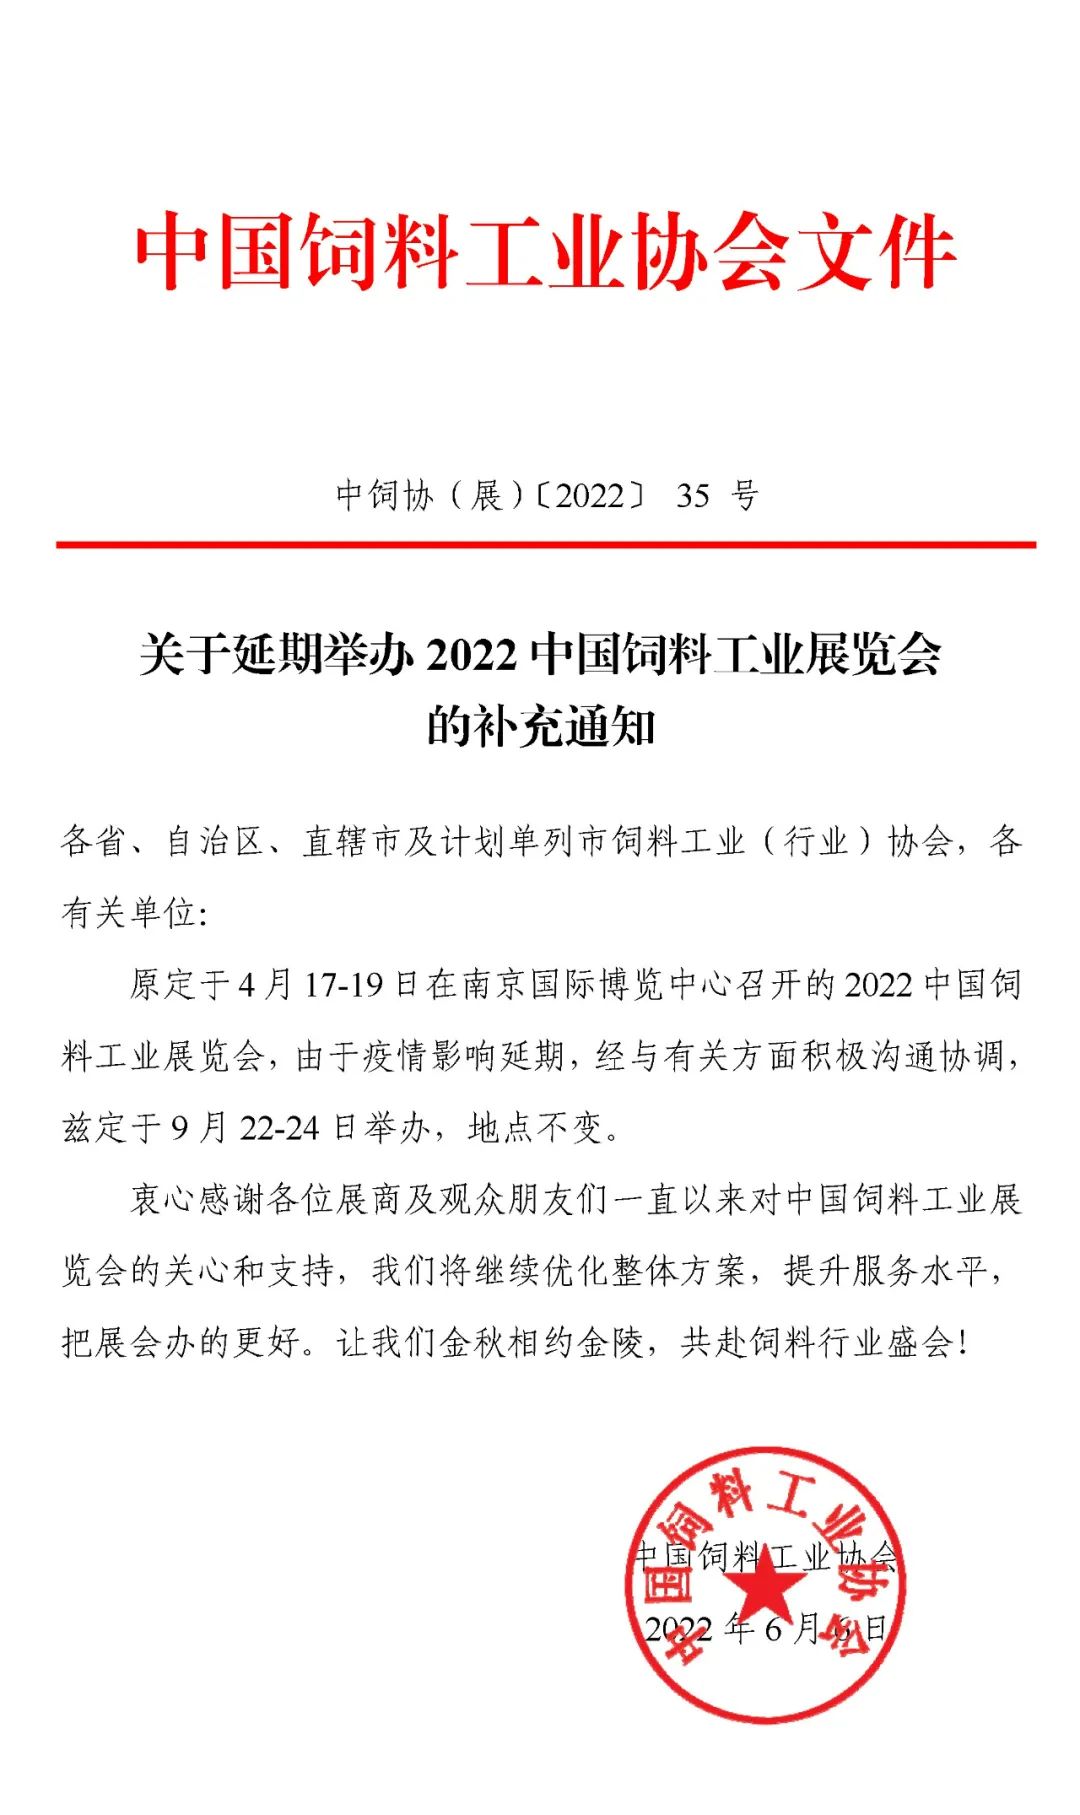 关于延期举办2022中国饲料工业展览会的补充通知